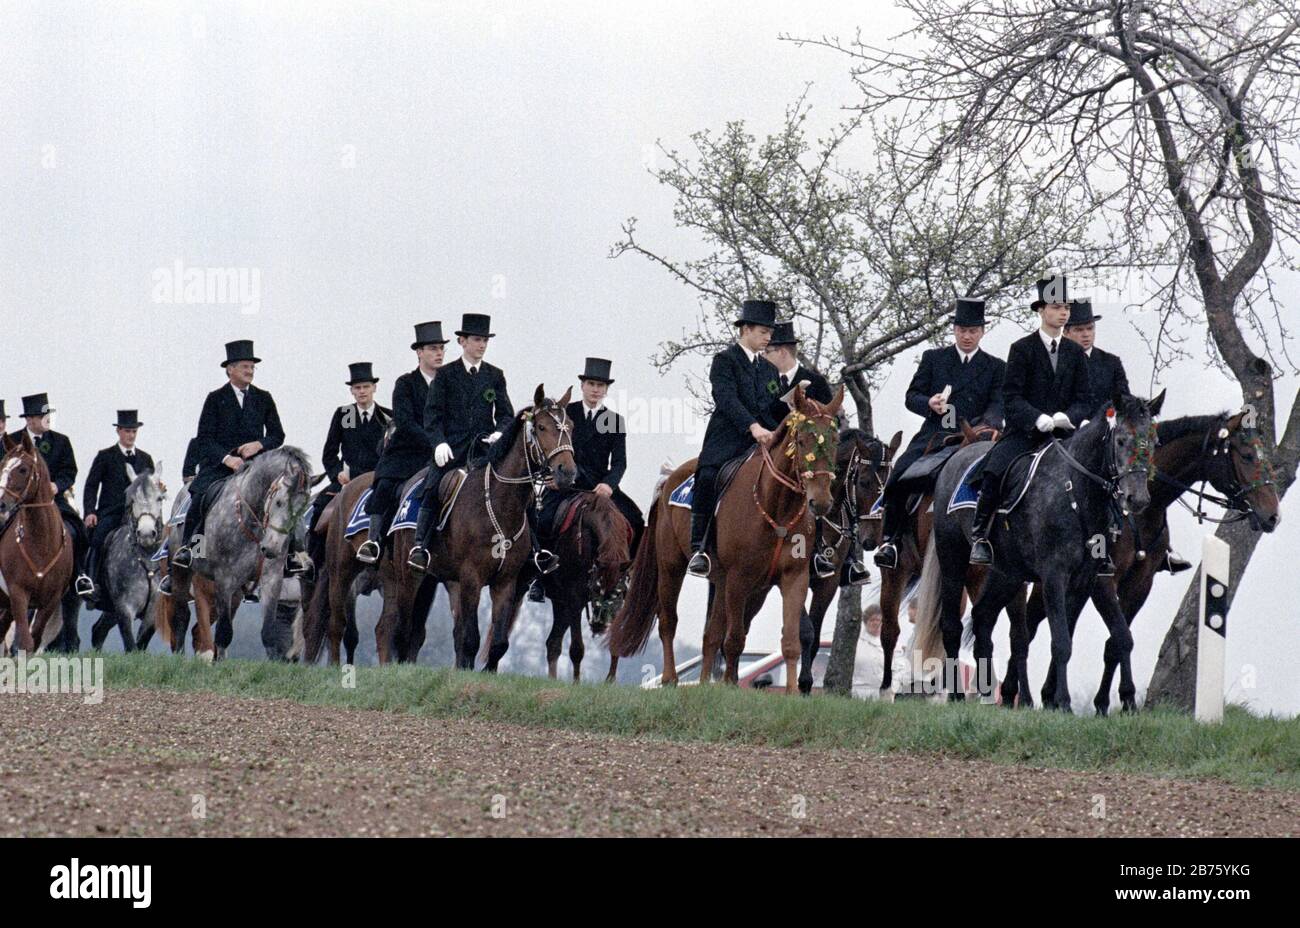 Sorbische Osterfahrer fahren am Ostersonntag in Wittichenau mit ihren Pferden, am 30.03.1997 [automatisierte Übersetzung] Stockfoto